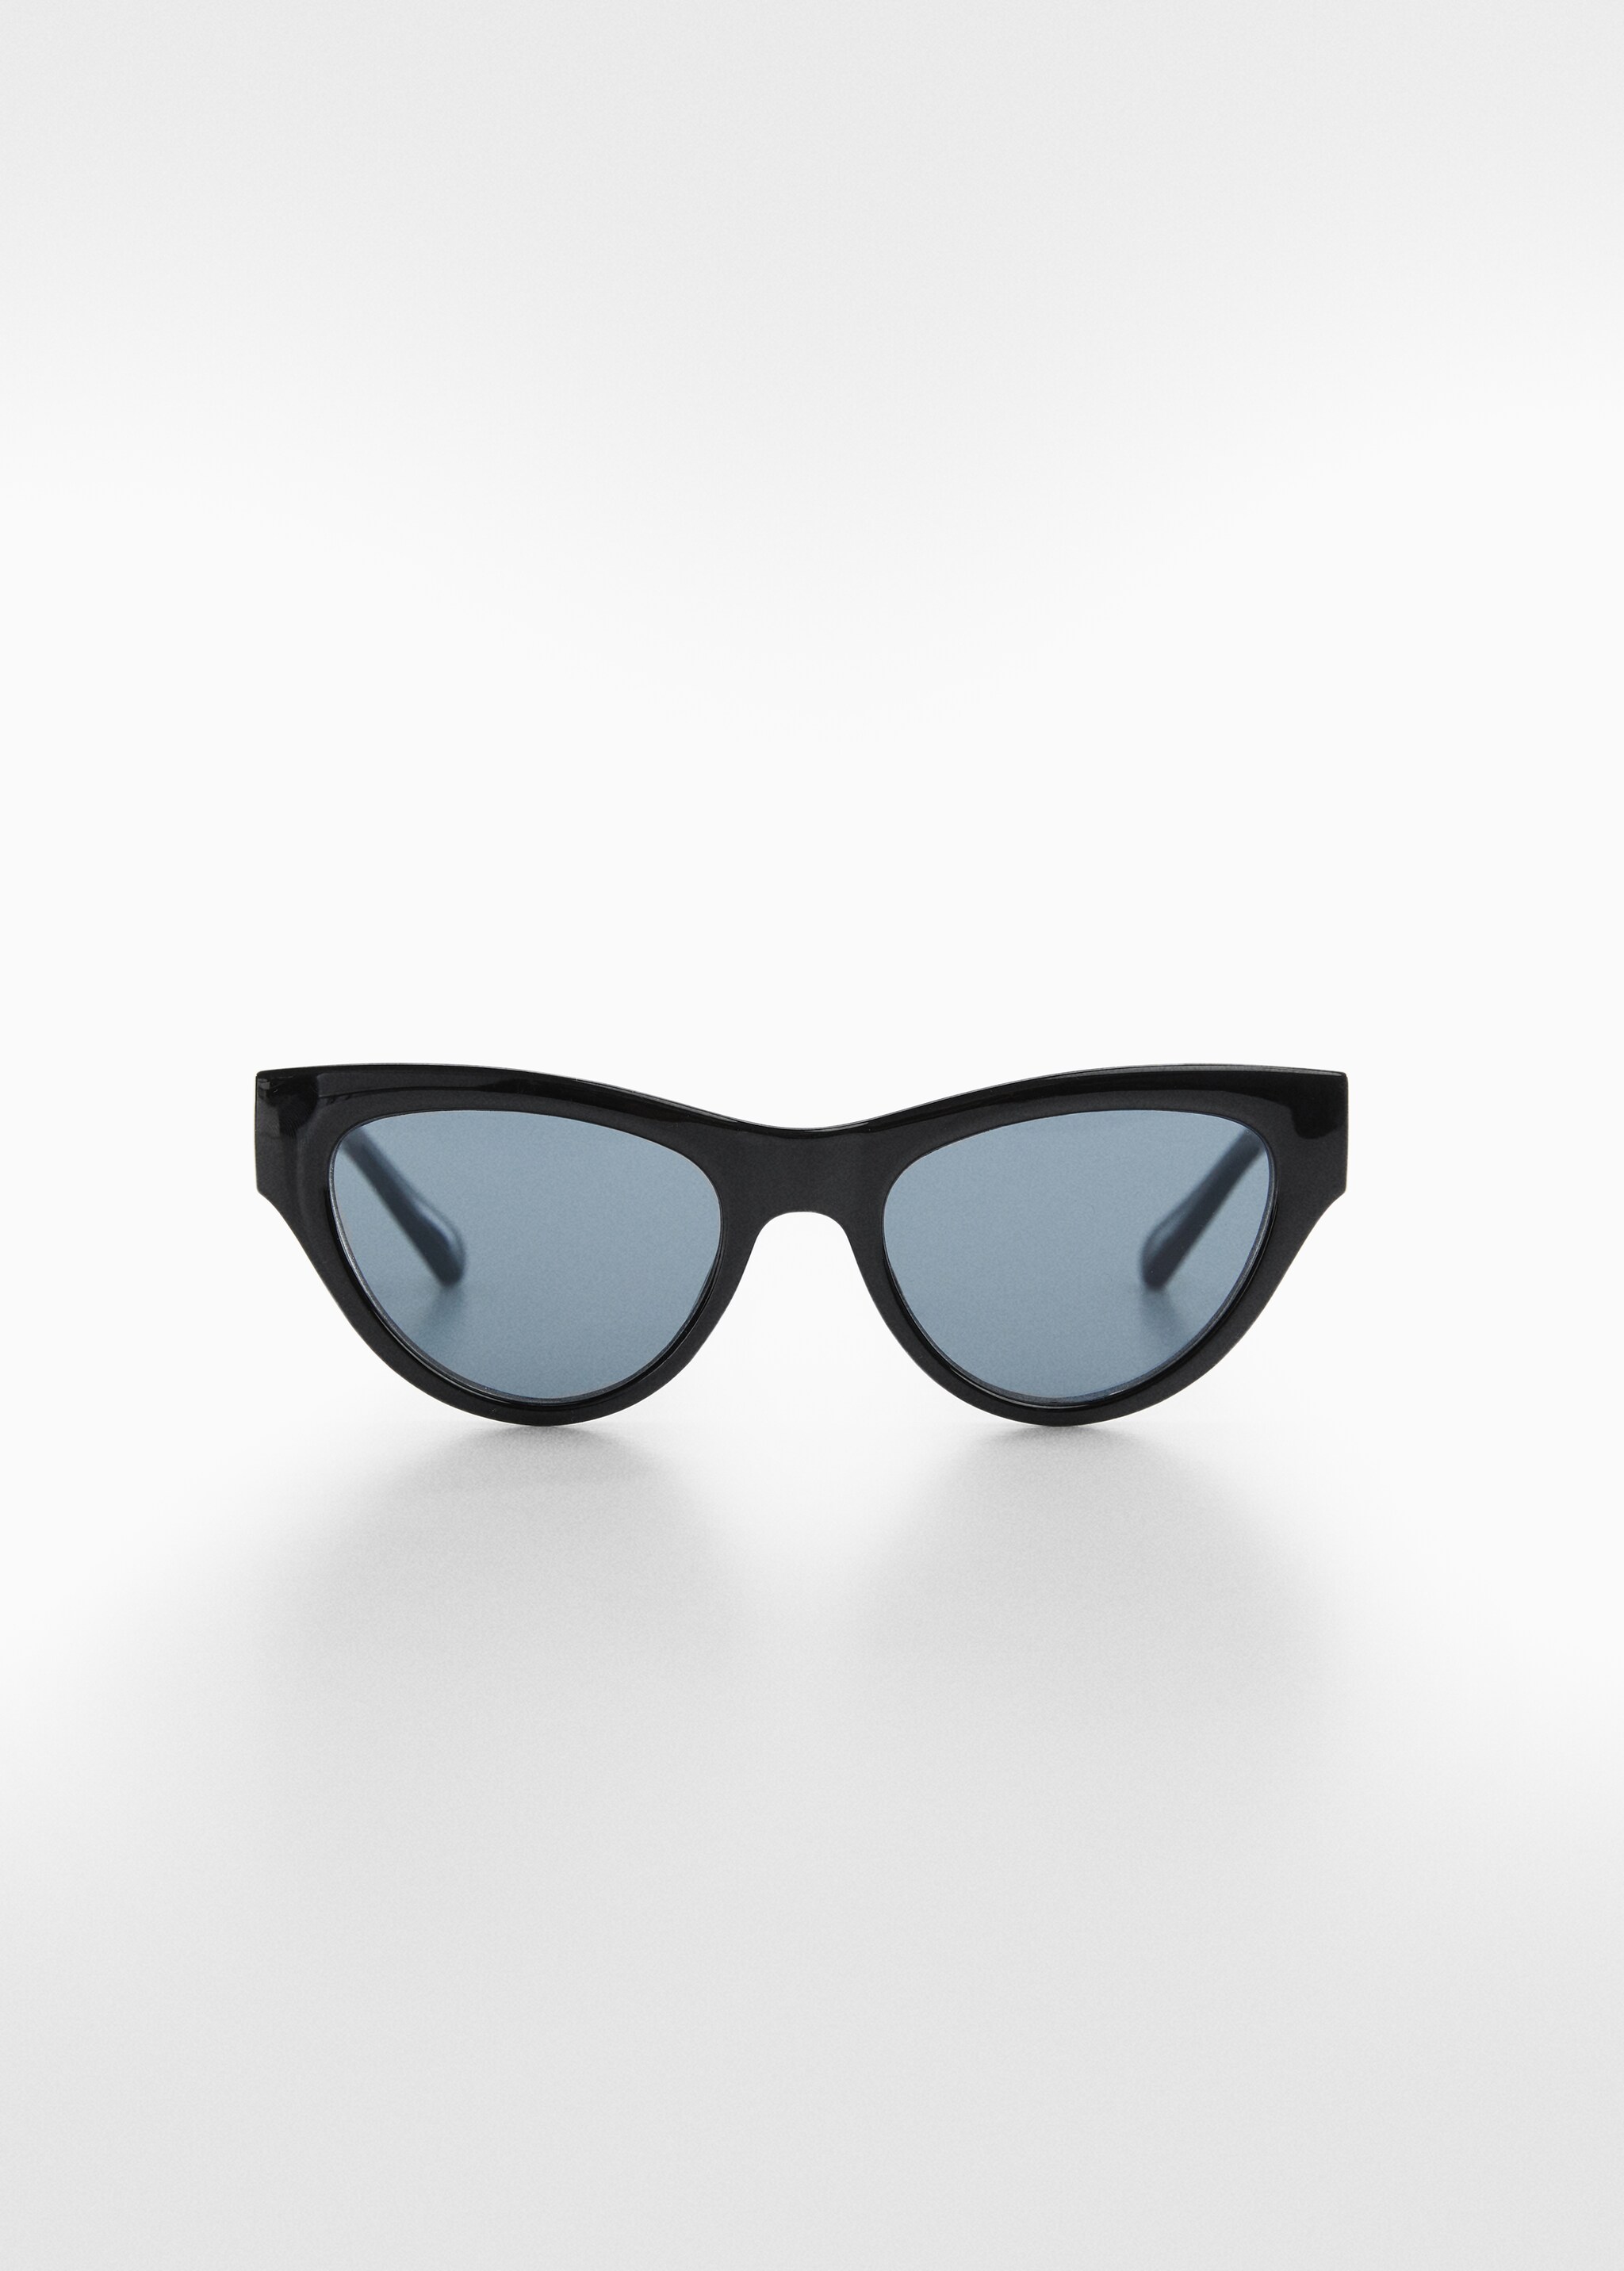 Gafas de sol cat-eye - Artículo sin modelo